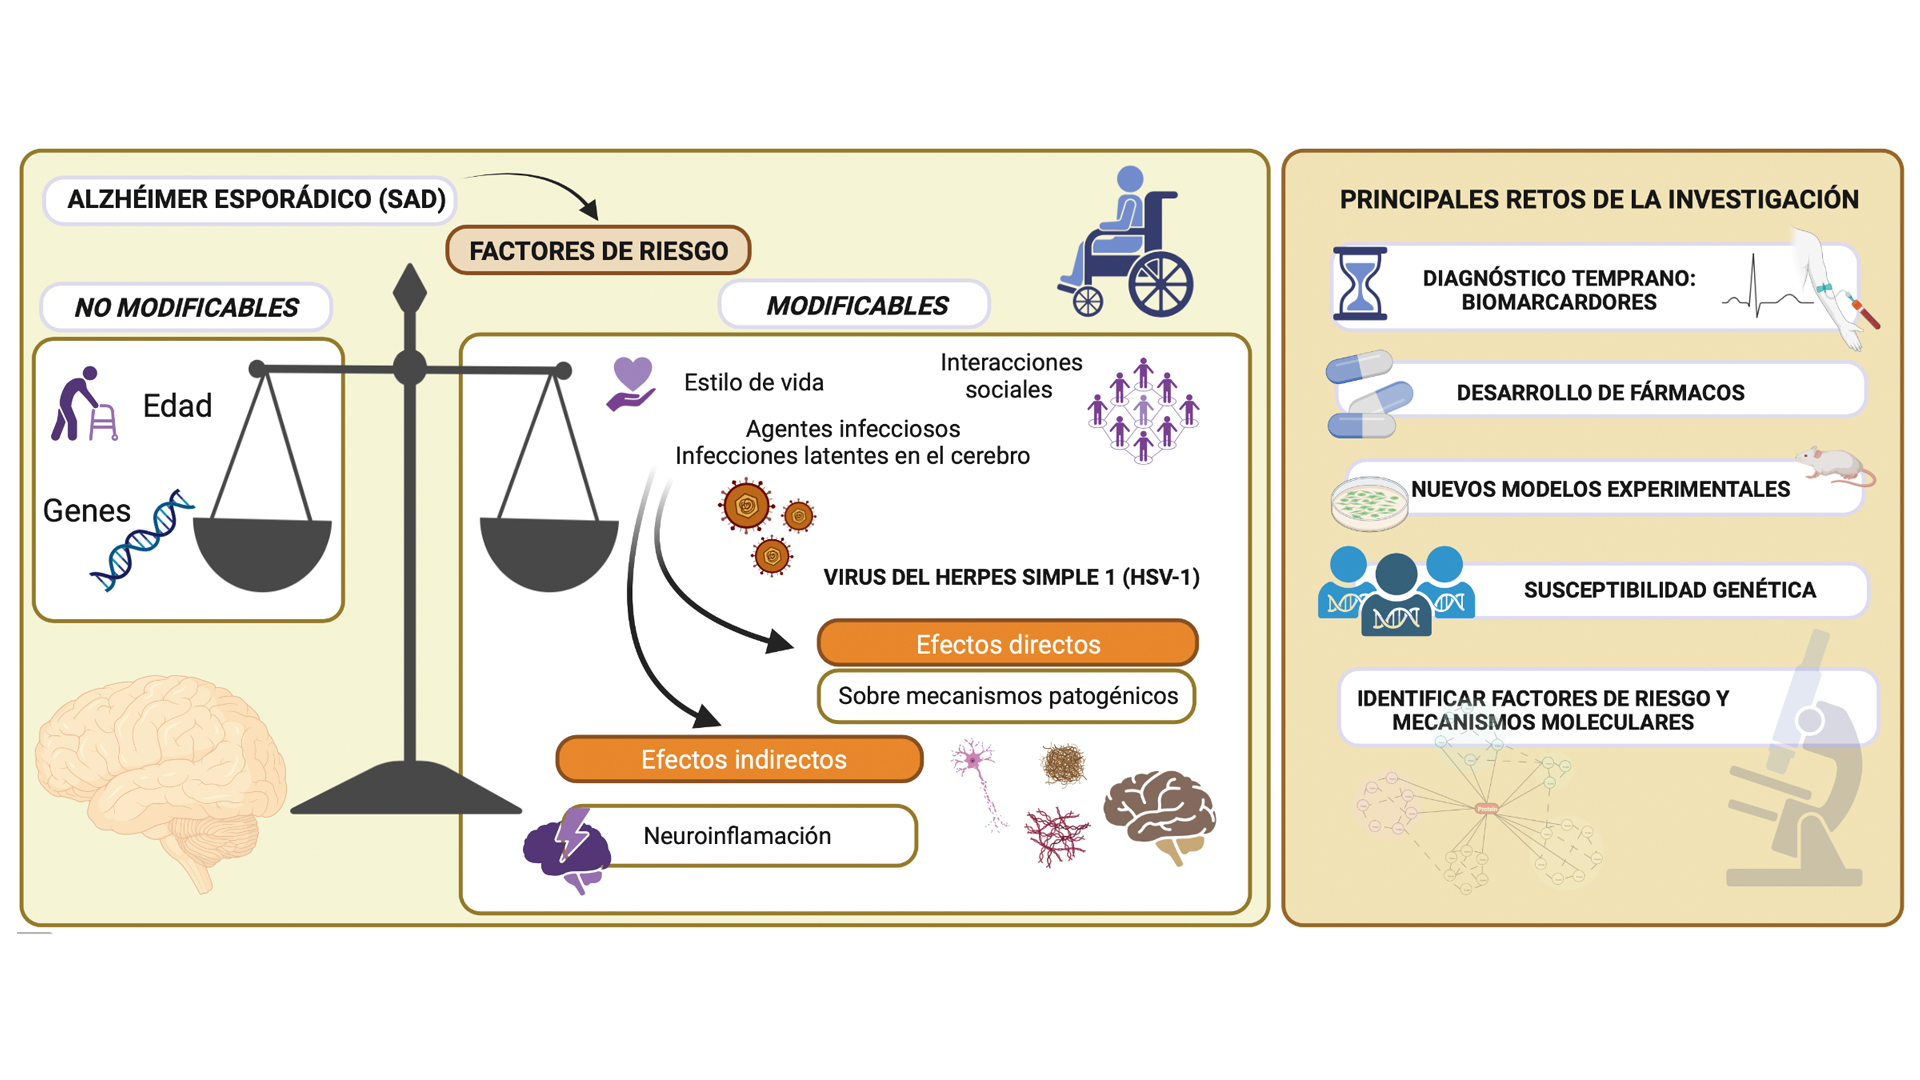 Diagrama que muestra los factores de riesgo en el alzhéimer esporádico y principales retos de la investigación actual